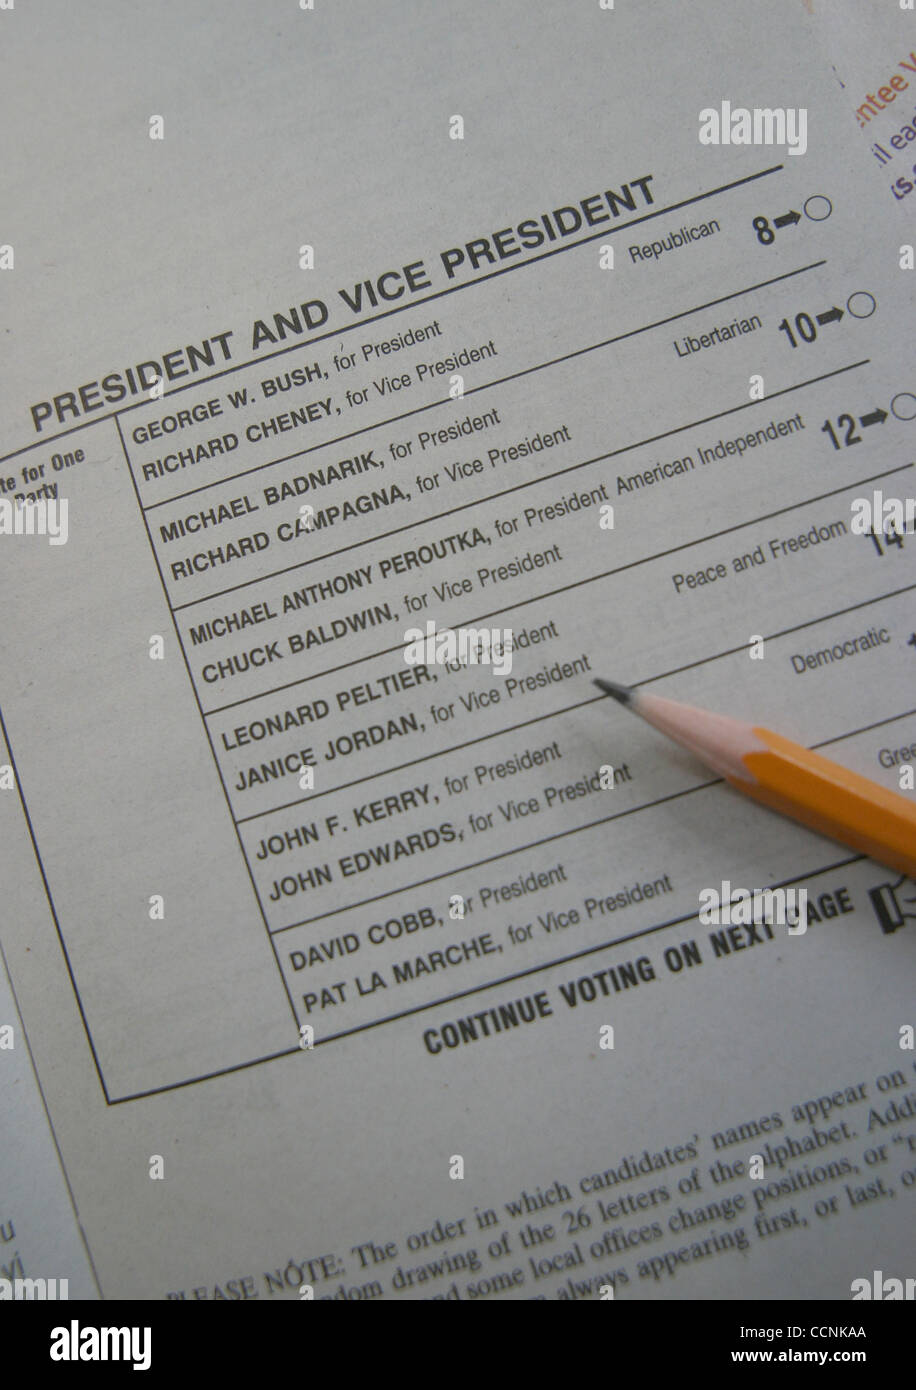 31. Oktober 2004; Los Angeles, Kalifornien, USA; Wähler nimmt Kurs zu den Urnen am Dienstag, 2. November, ihre Stimme abzugeben. Eine Stimmabgabe Stimmzettel mit Bleistift. Präsidentschafts Wahl 2004. Stockfoto